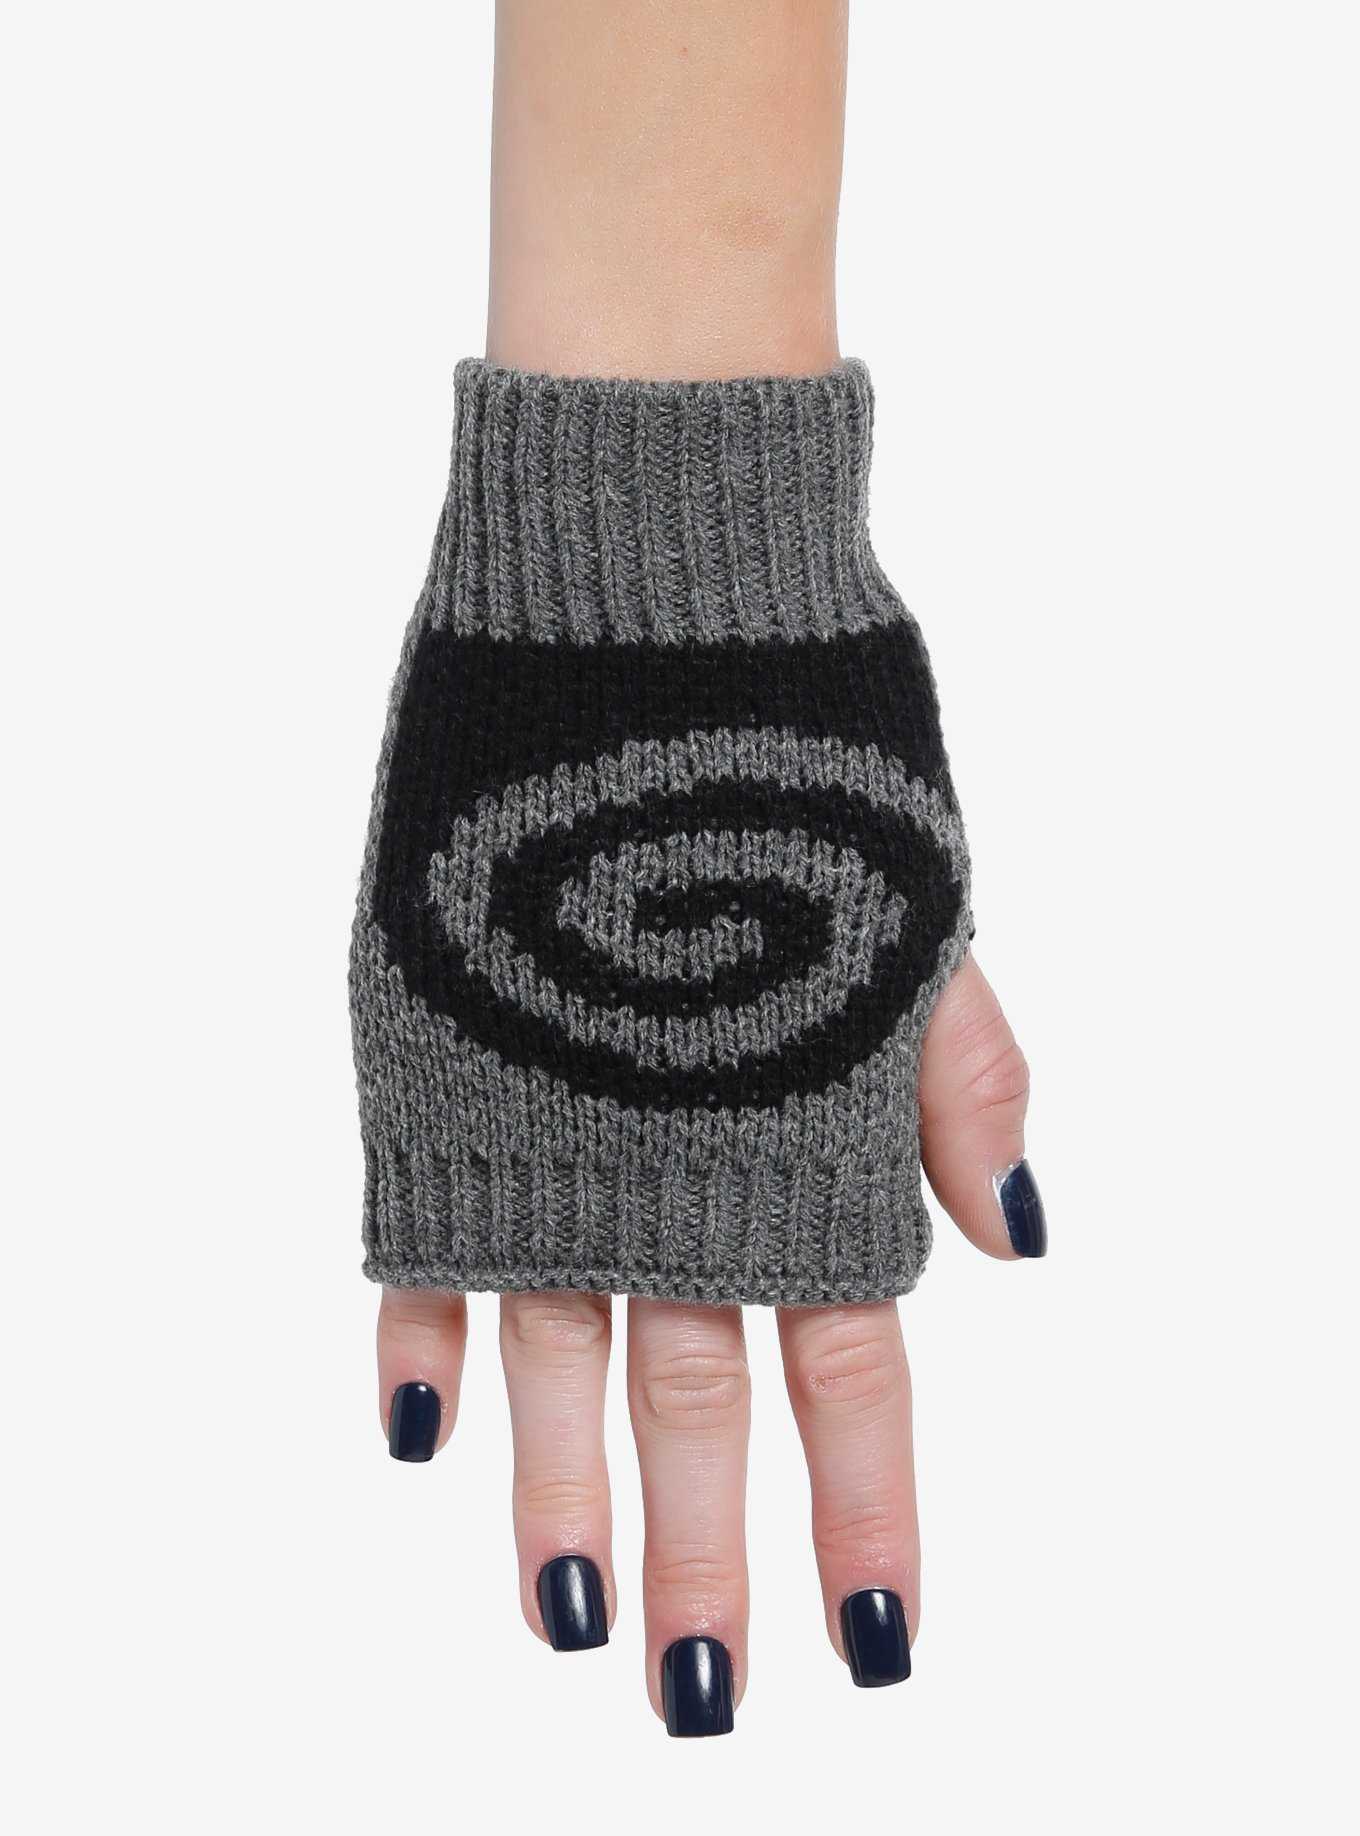 Swirl Knit Fingerless Gloves, , hi-res